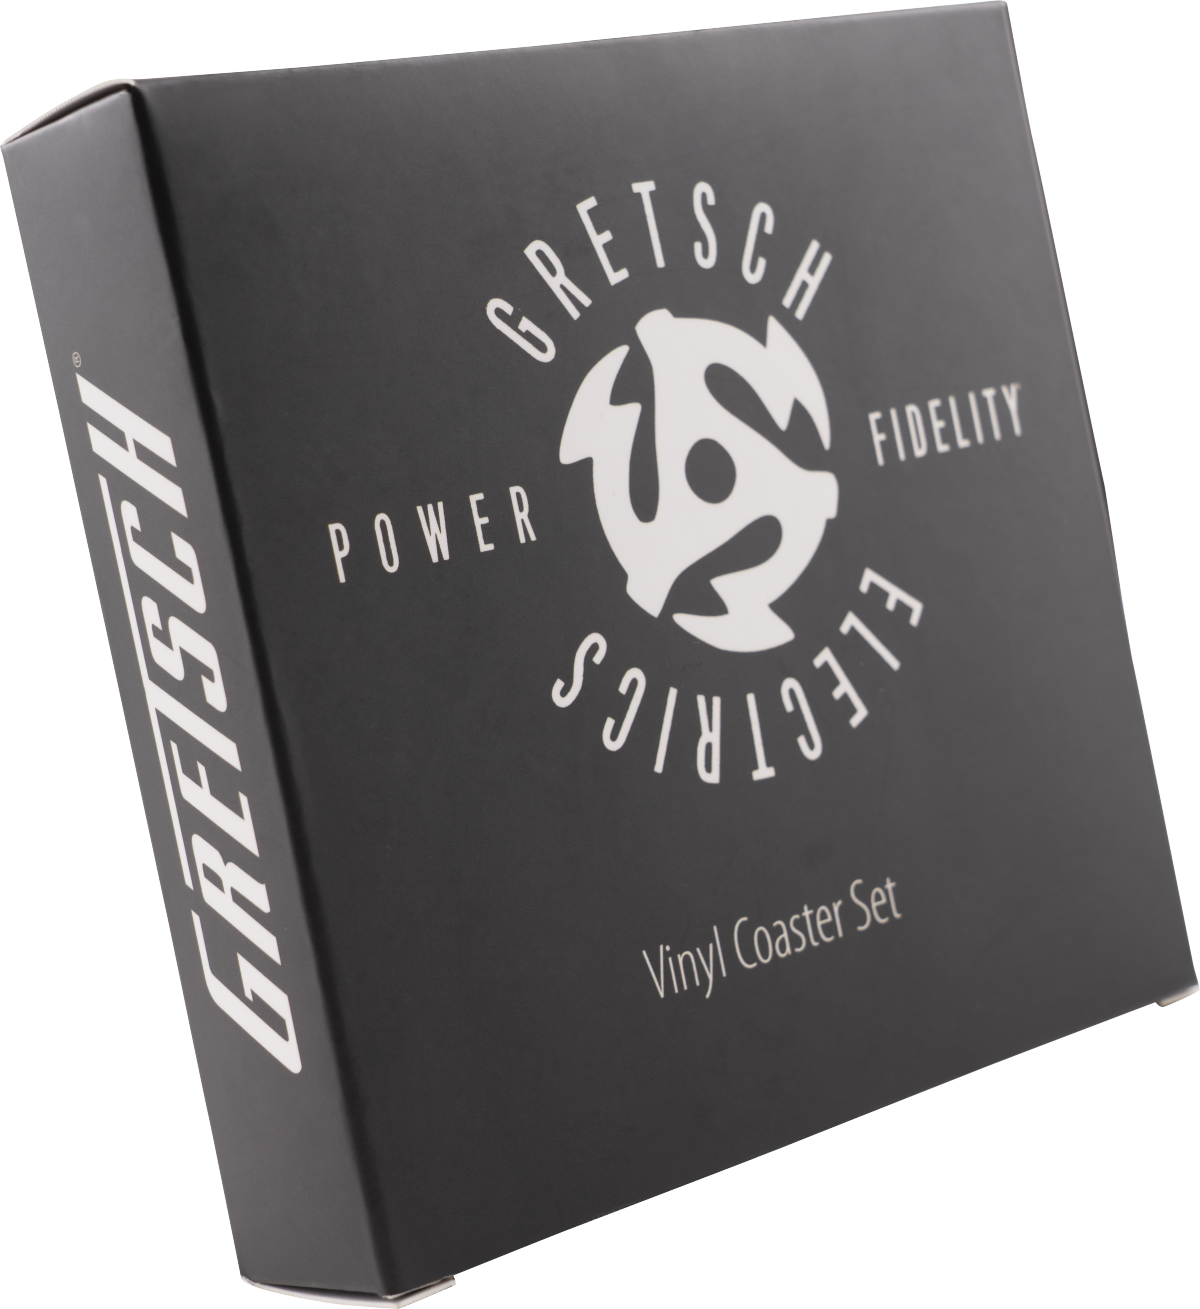 Gretsch Power & Fidelity Vinyl Coaster Set - Posavasos - Variation 3